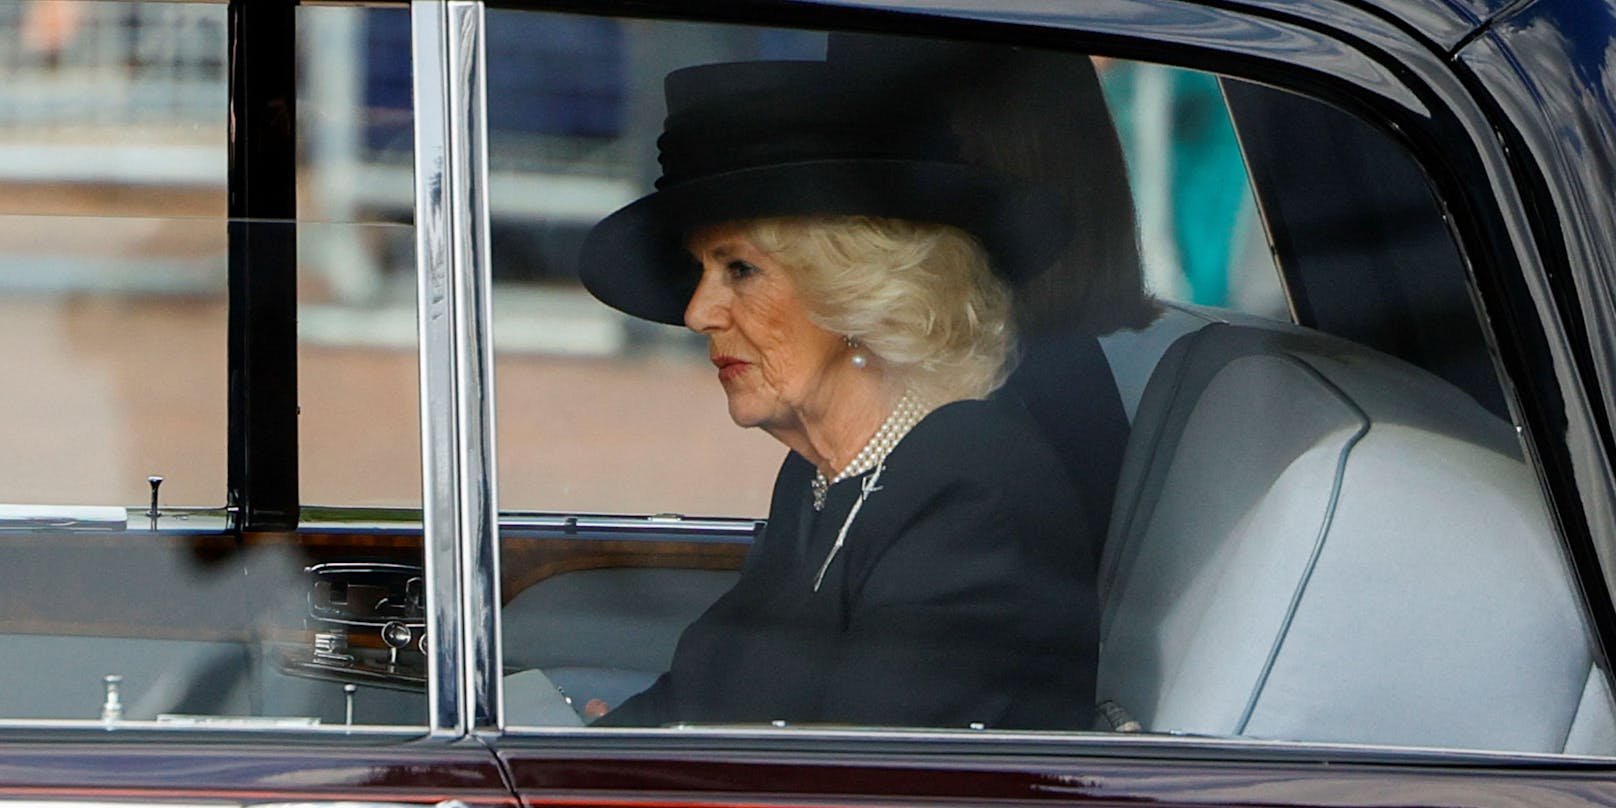 Camilla fuhr hier mit dem Auto hinter dem Sarg der britischen Monarchin.